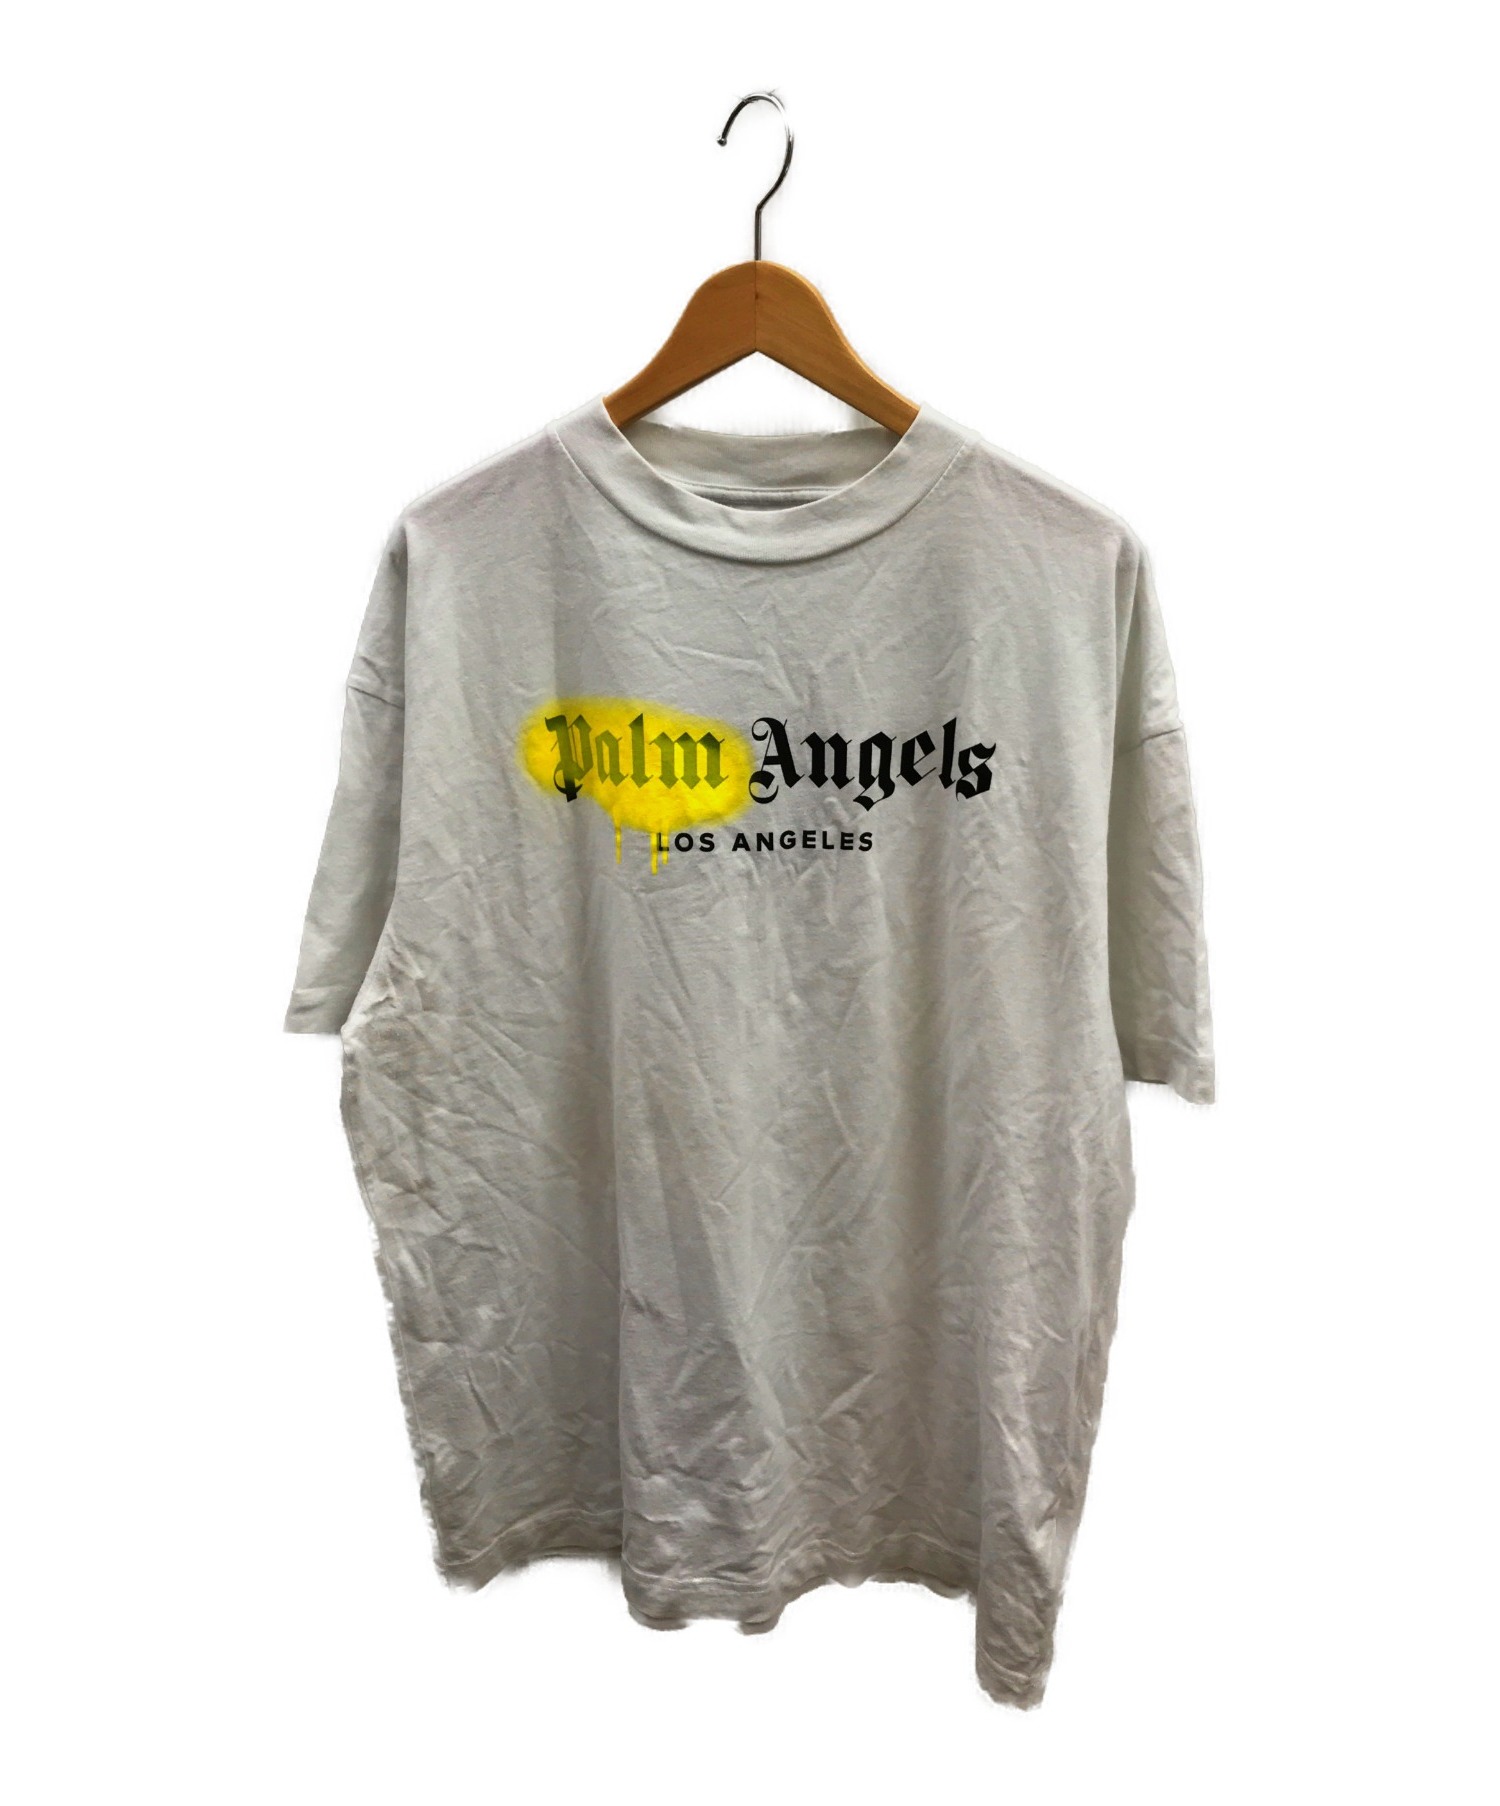 【中古・古着通販】Palm Angels (パーム・エンジェルス) LAスプレーロゴプリントTシャツ ホワイト サイズ:XL LA